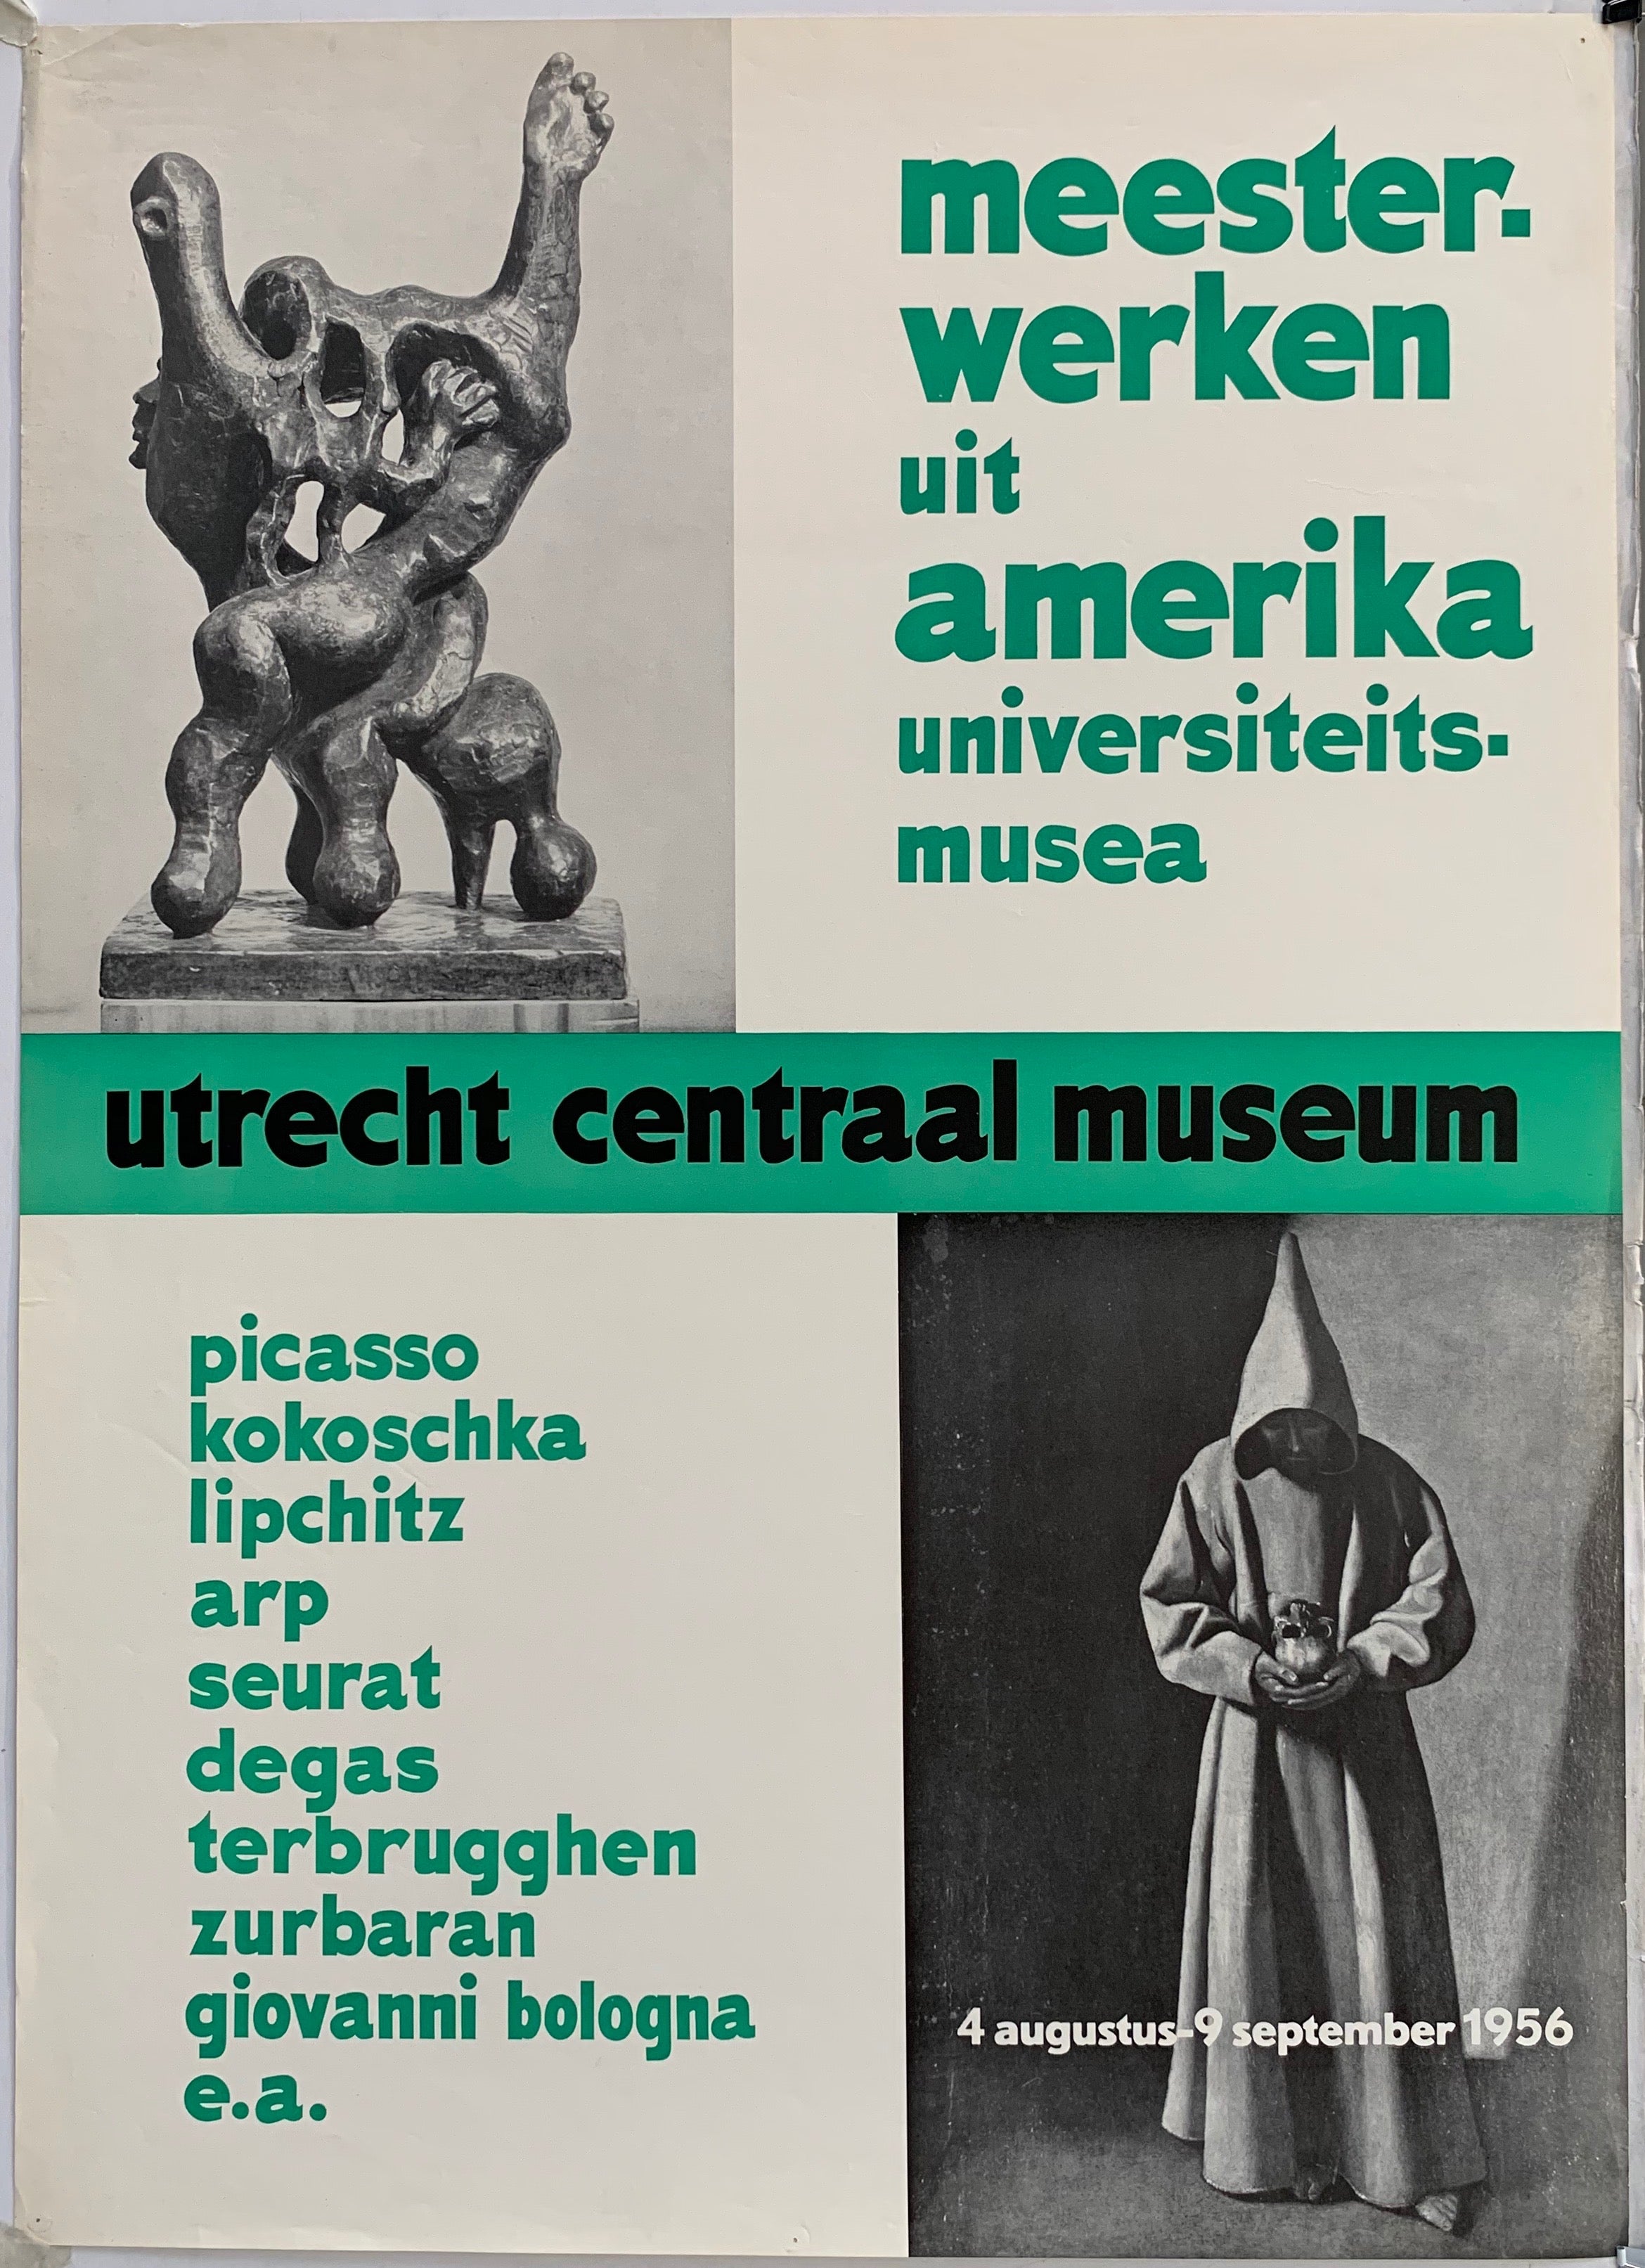 Meesterwerken uit amerika universiteits musea - Utrecht Centraal Museum